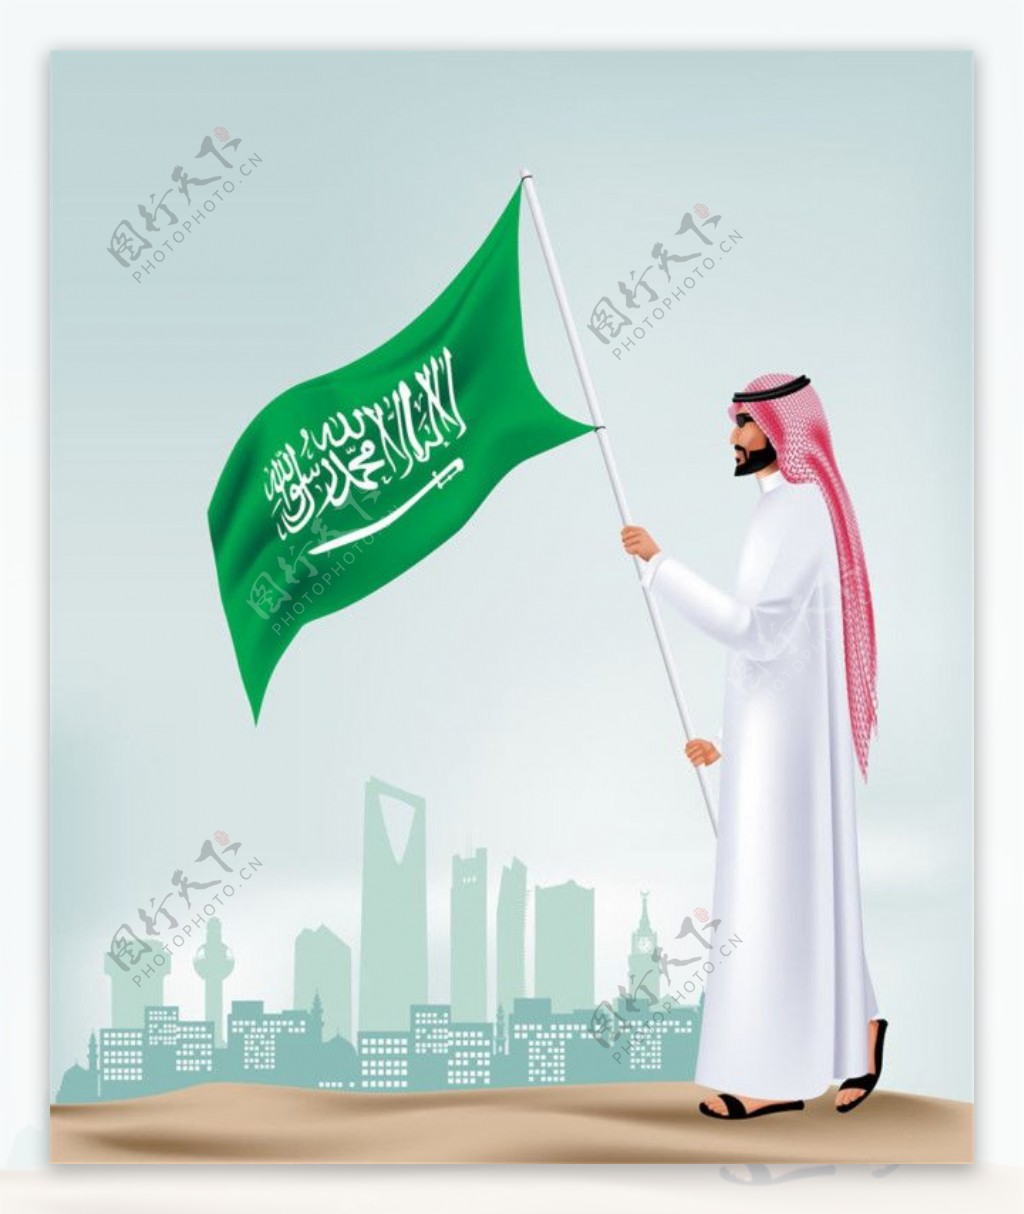 阿拉伯男人和沙特阿拉伯王国城市建筑图片